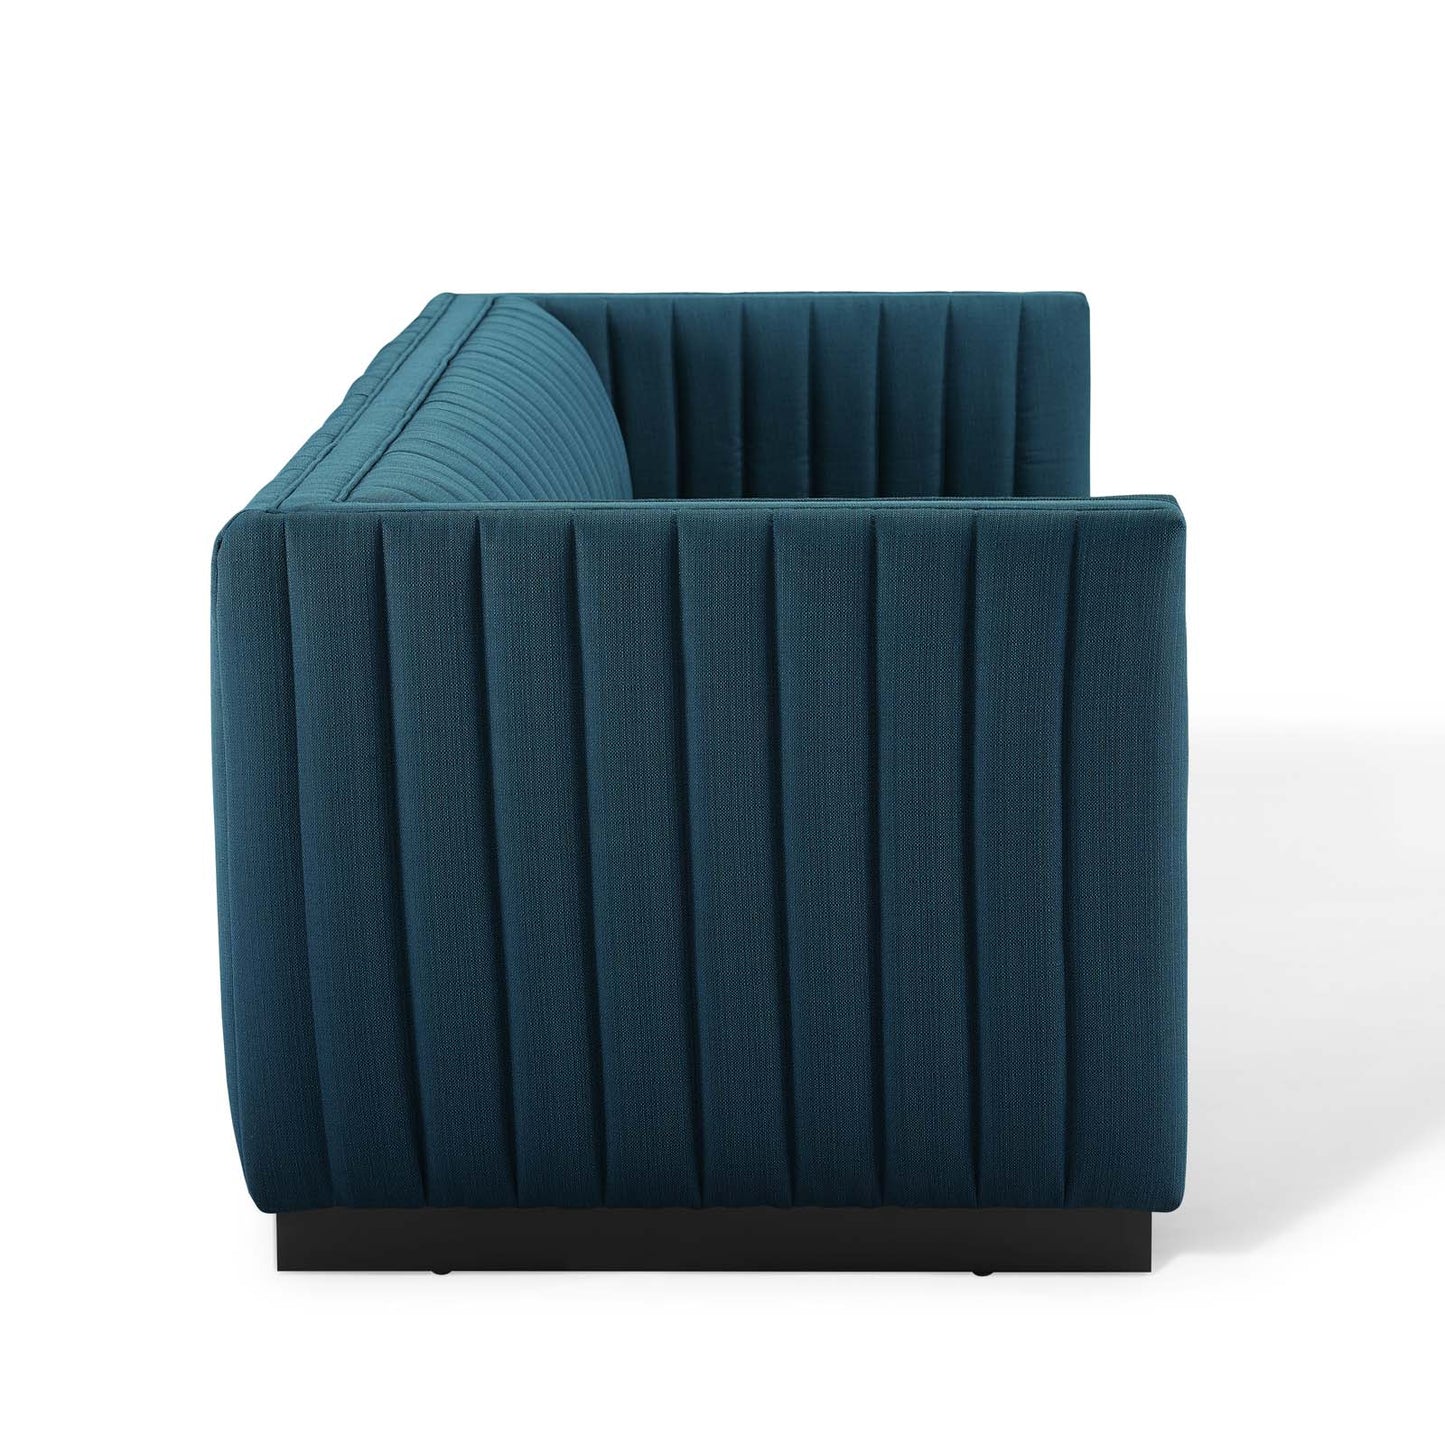 Modway Perception Tufted Upholstered Fabric Sofa | Sofas | Modishstore-6